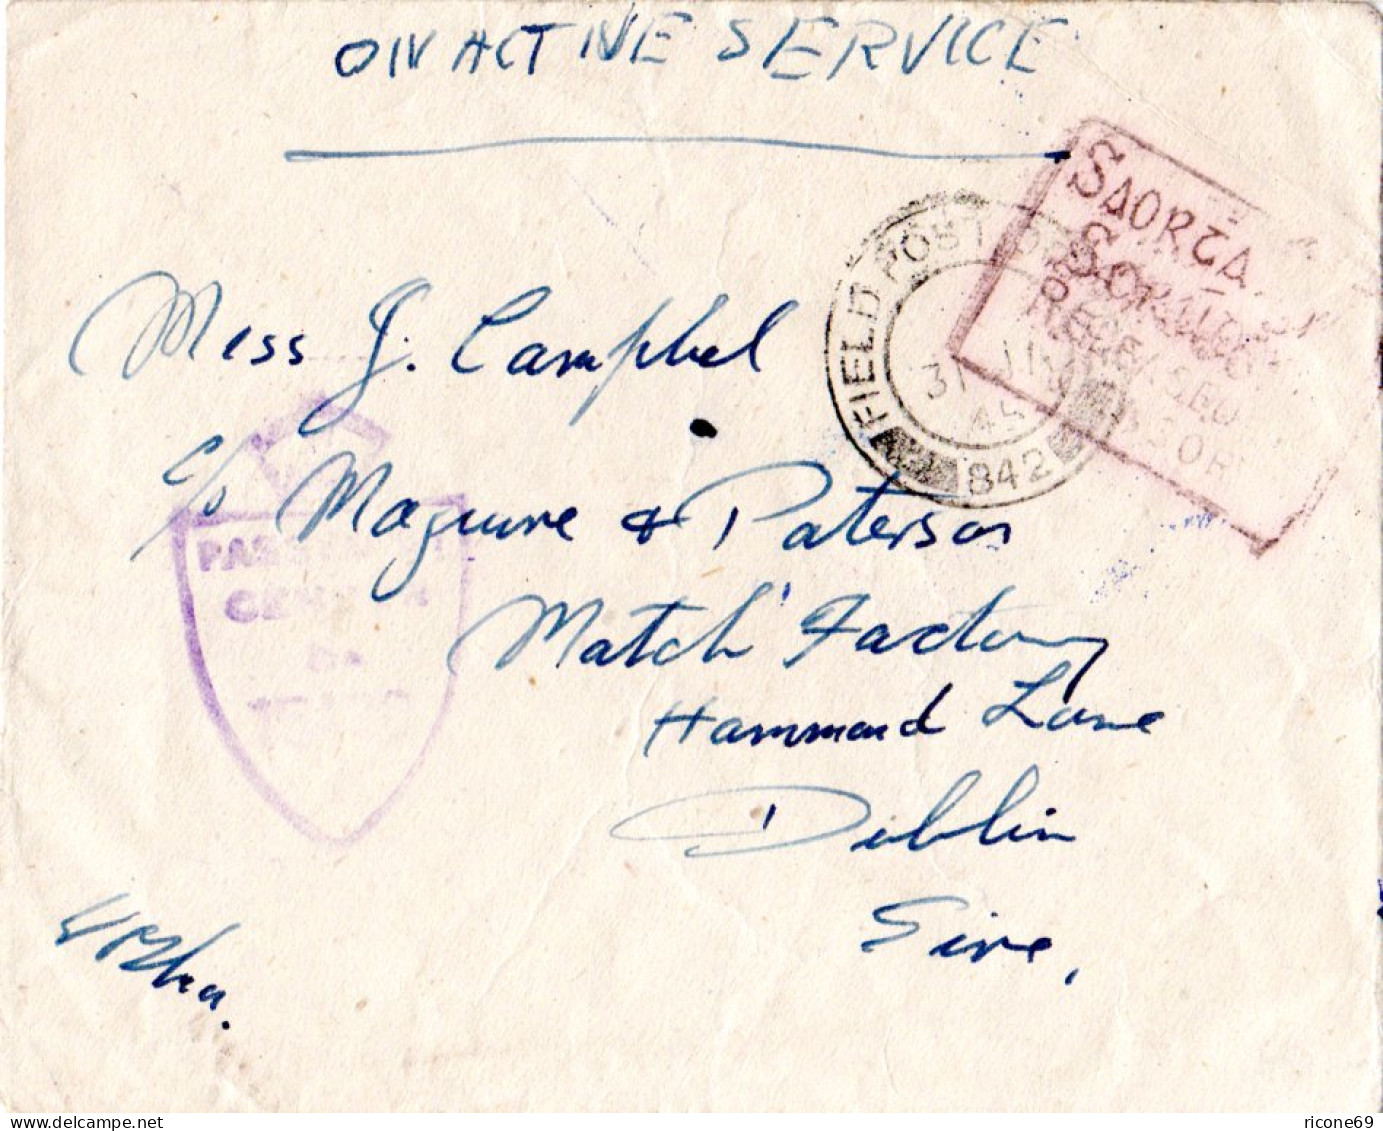 Irland 1944, FPO 842, Feldpost Brief M. Irischer Zensur Released By Censor - Storia Postale